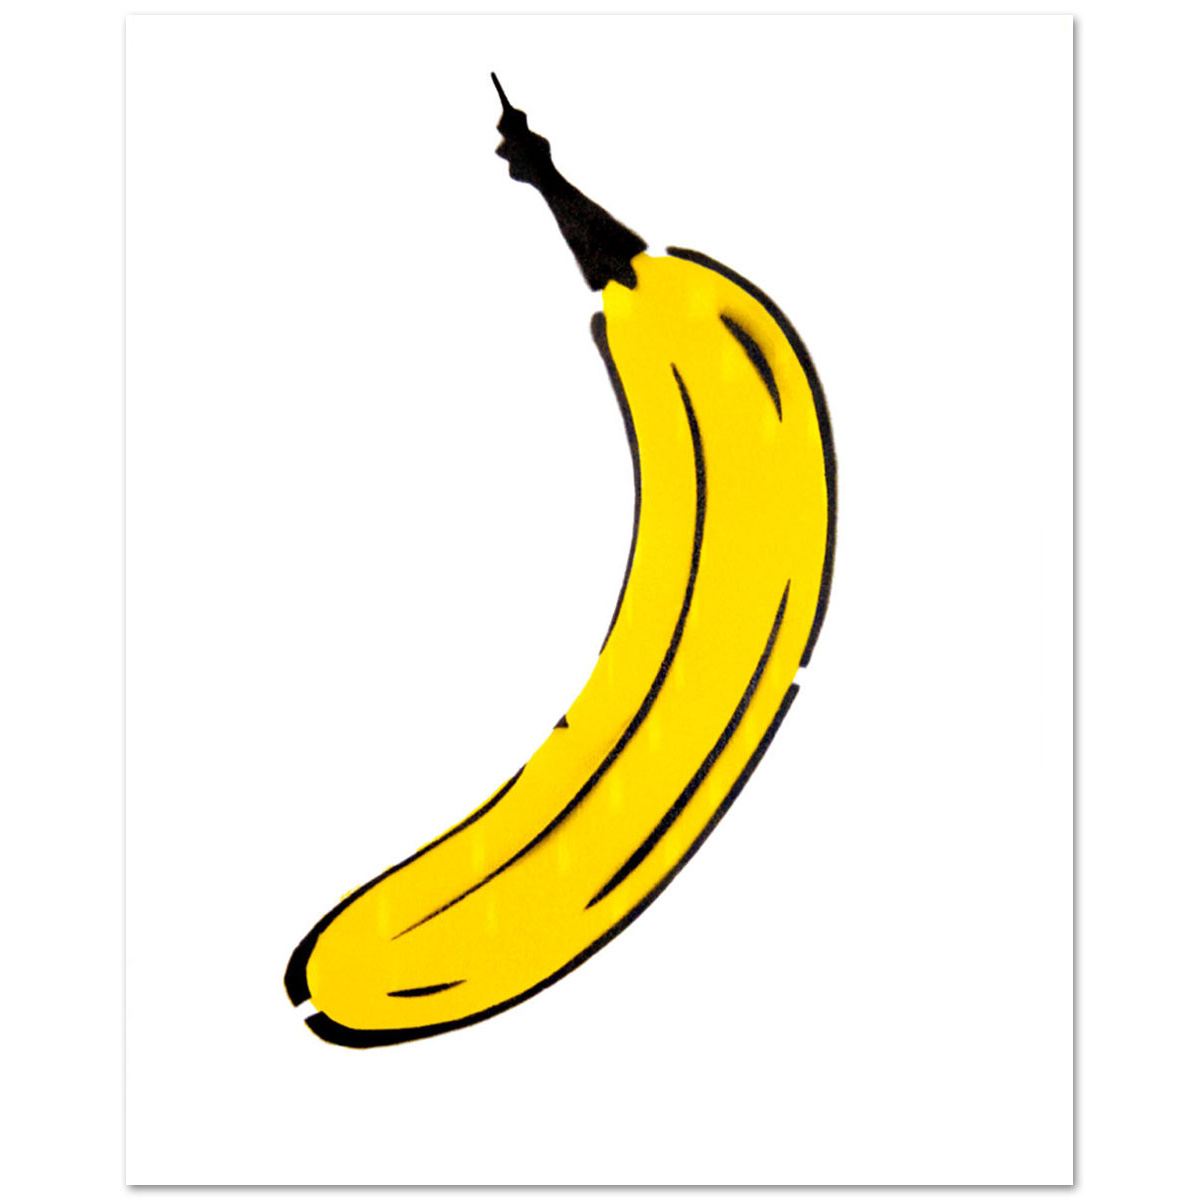 Classic Banane von Thomas Baumgärtel